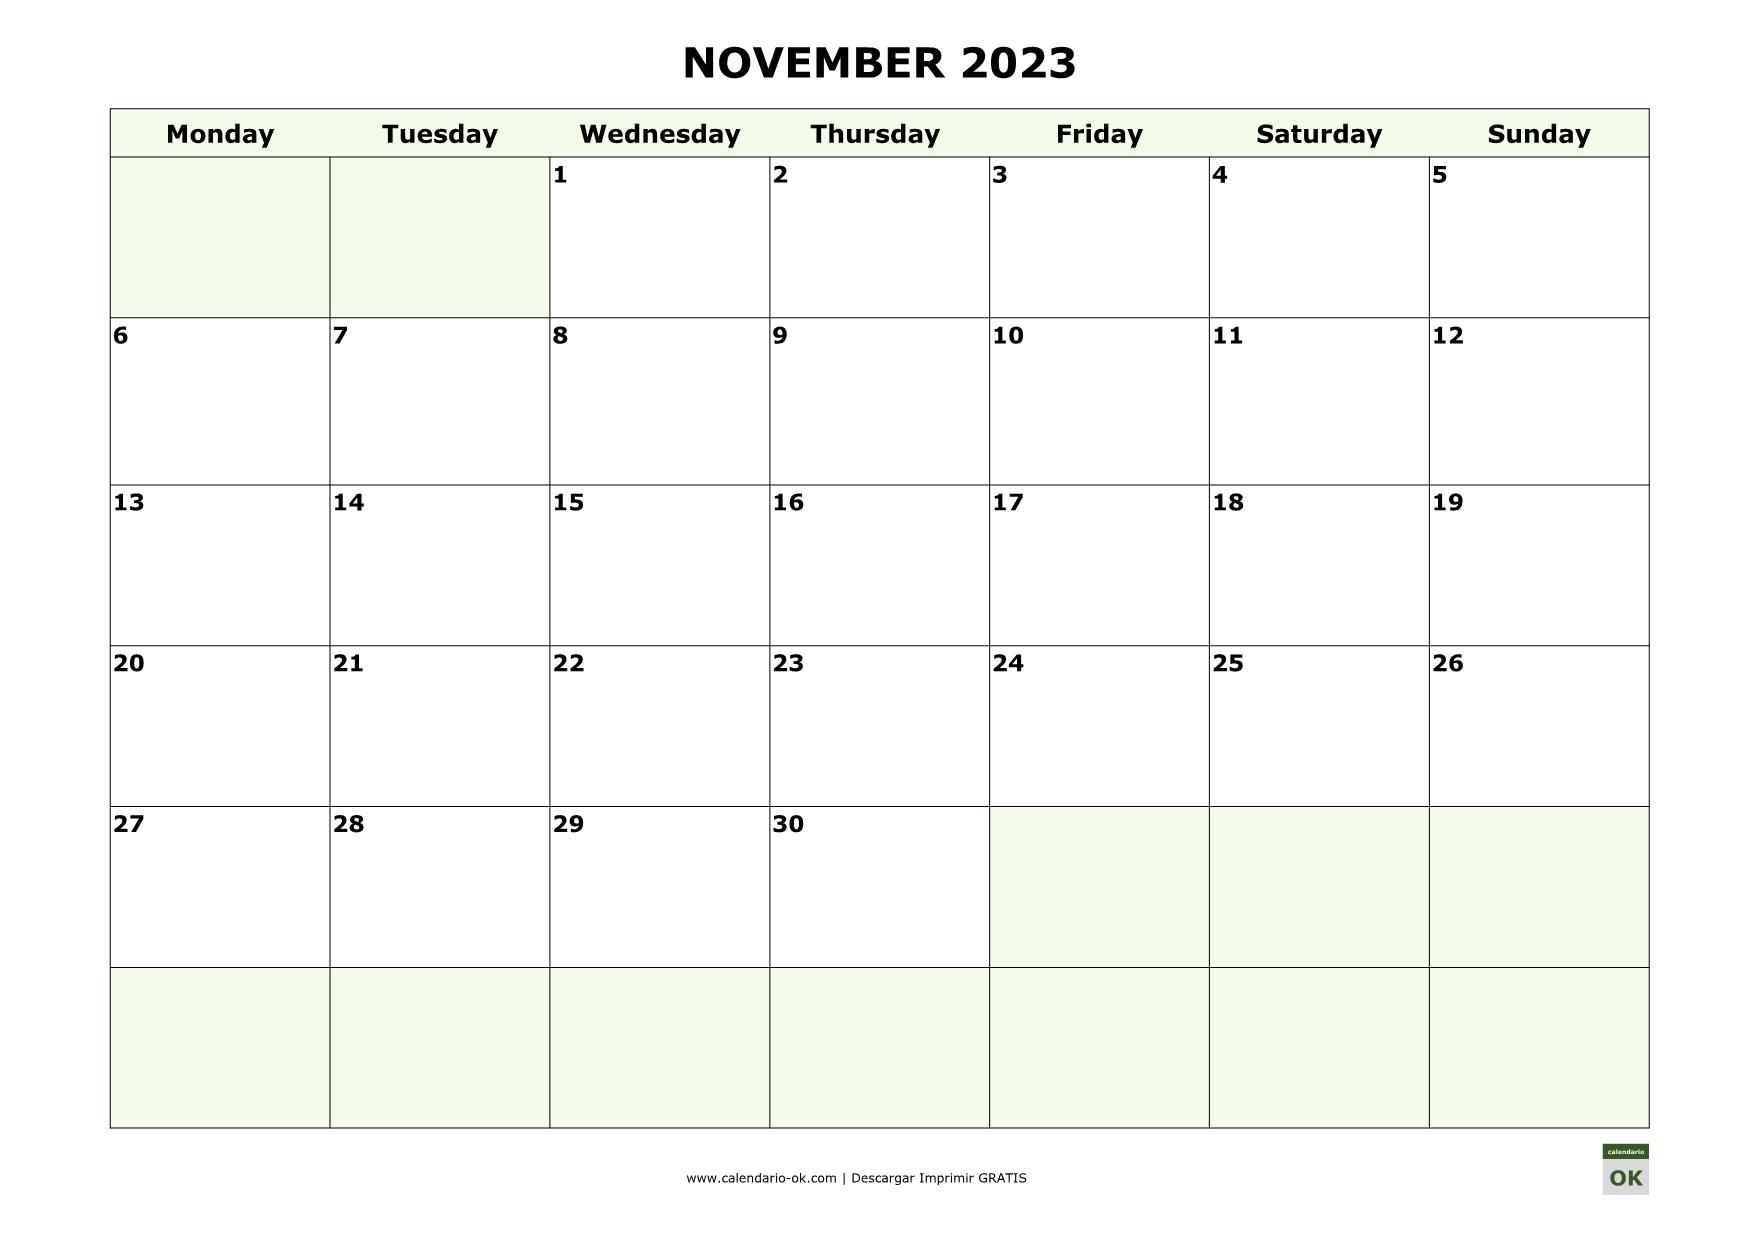 NOVIEMBRE 2023 calendario en INGLES